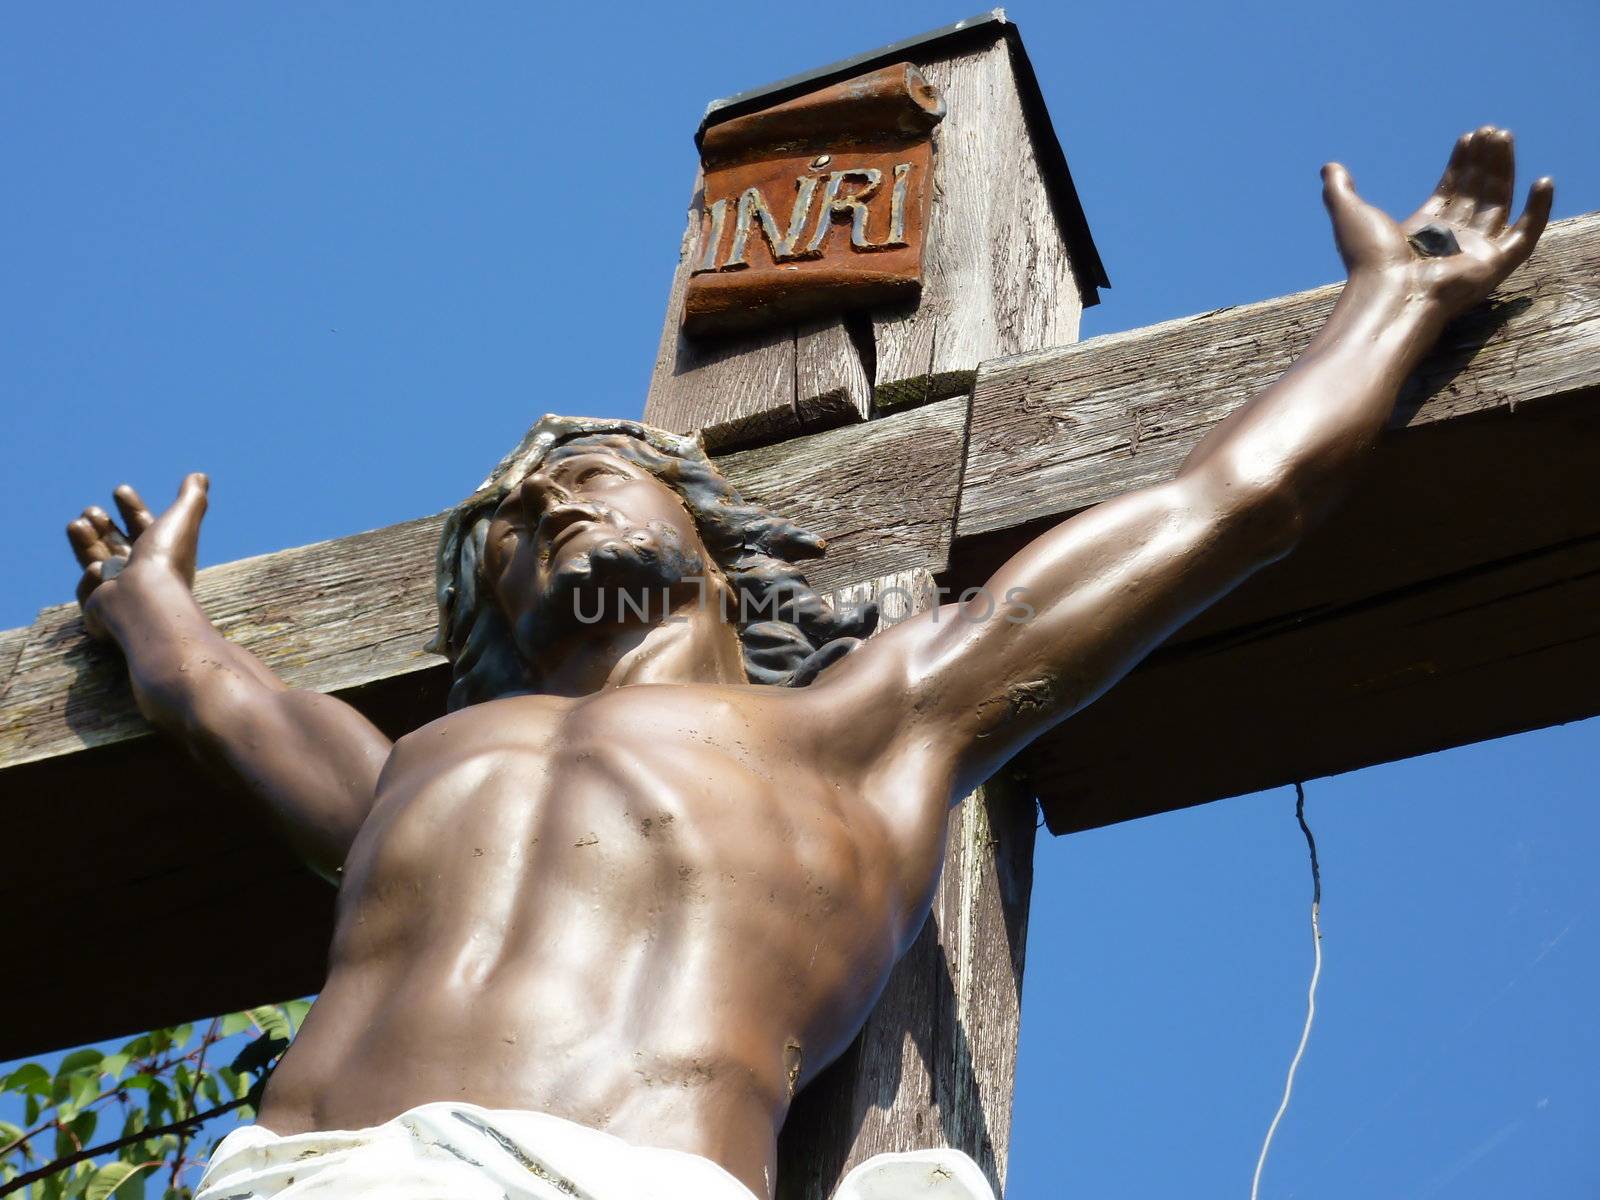 Jesus on a wood cross by Elenaphotos21